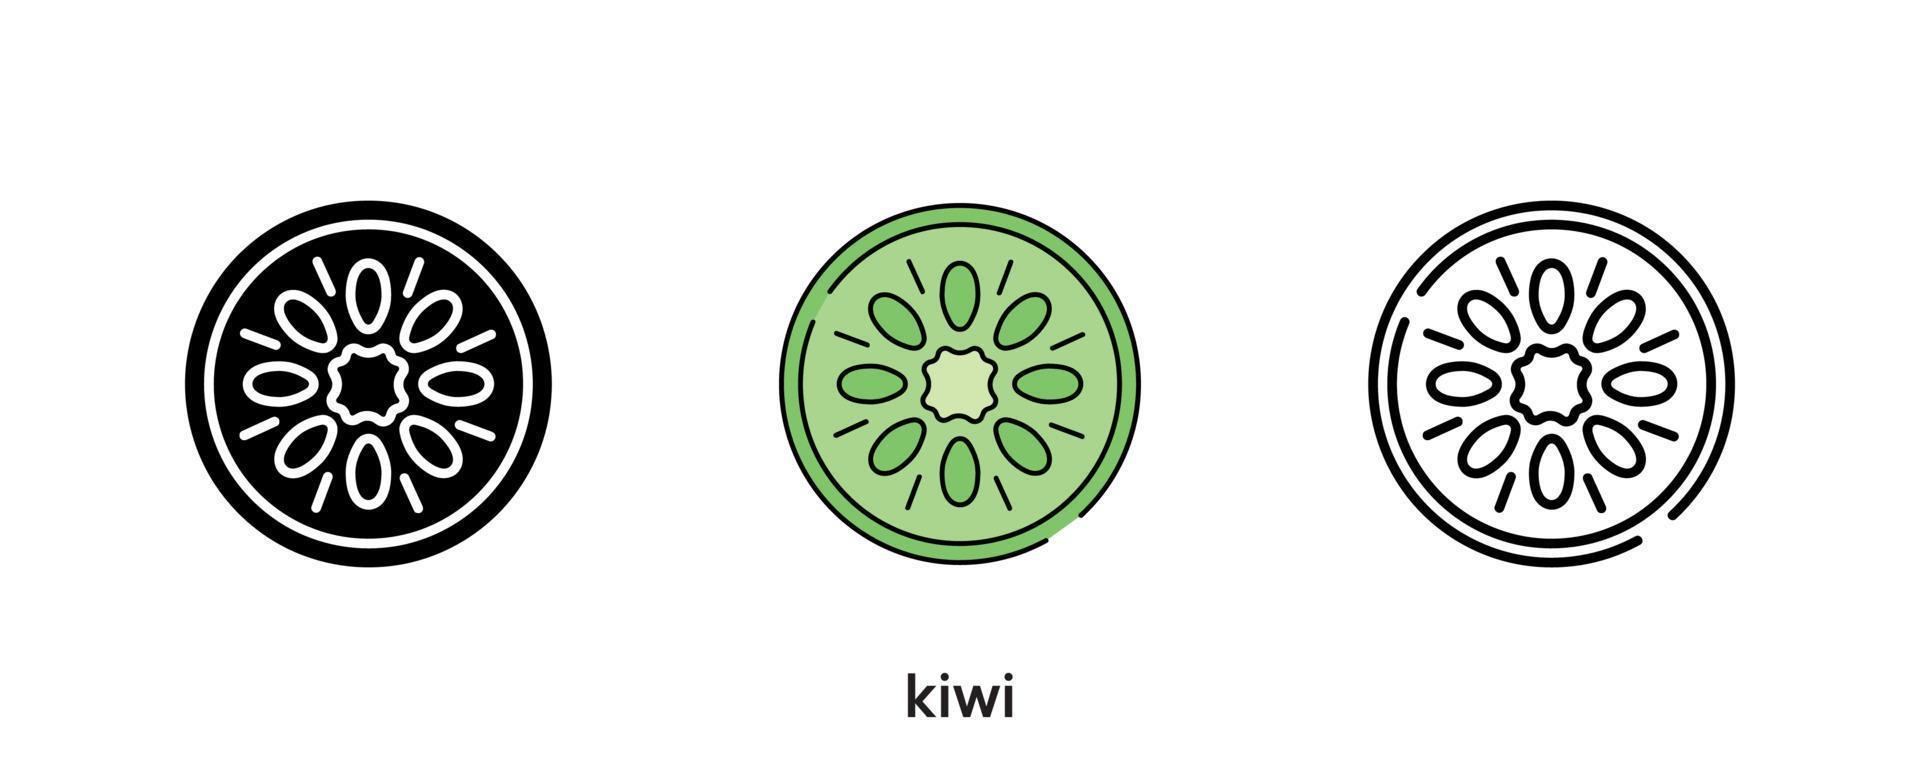 Kiwi-Icon-Design. Kiwi-Symbol in Silhouette gesetzt, farbig und linear. Kiwi Icon Line Vector Illustration isoliert auf einem sauberen Hintergrund für Ihr Logo-Design für mobile Webanwendungen. moderne Linie.